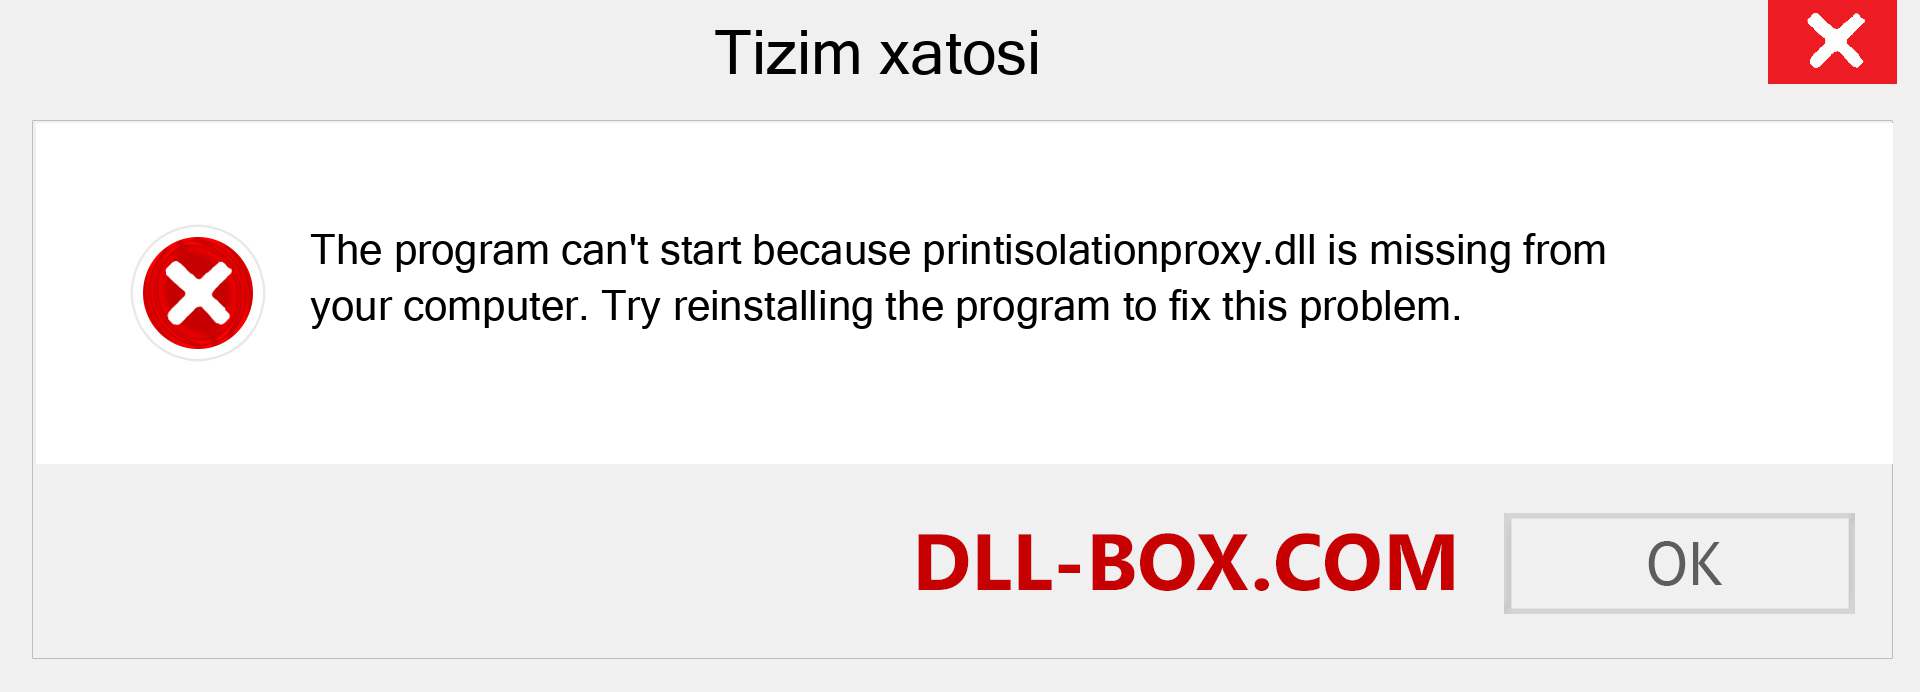 printisolationproxy.dll fayli yo'qolganmi?. Windows 7, 8, 10 uchun yuklab olish - Windowsda printisolationproxy dll etishmayotgan xatoni tuzating, rasmlar, rasmlar